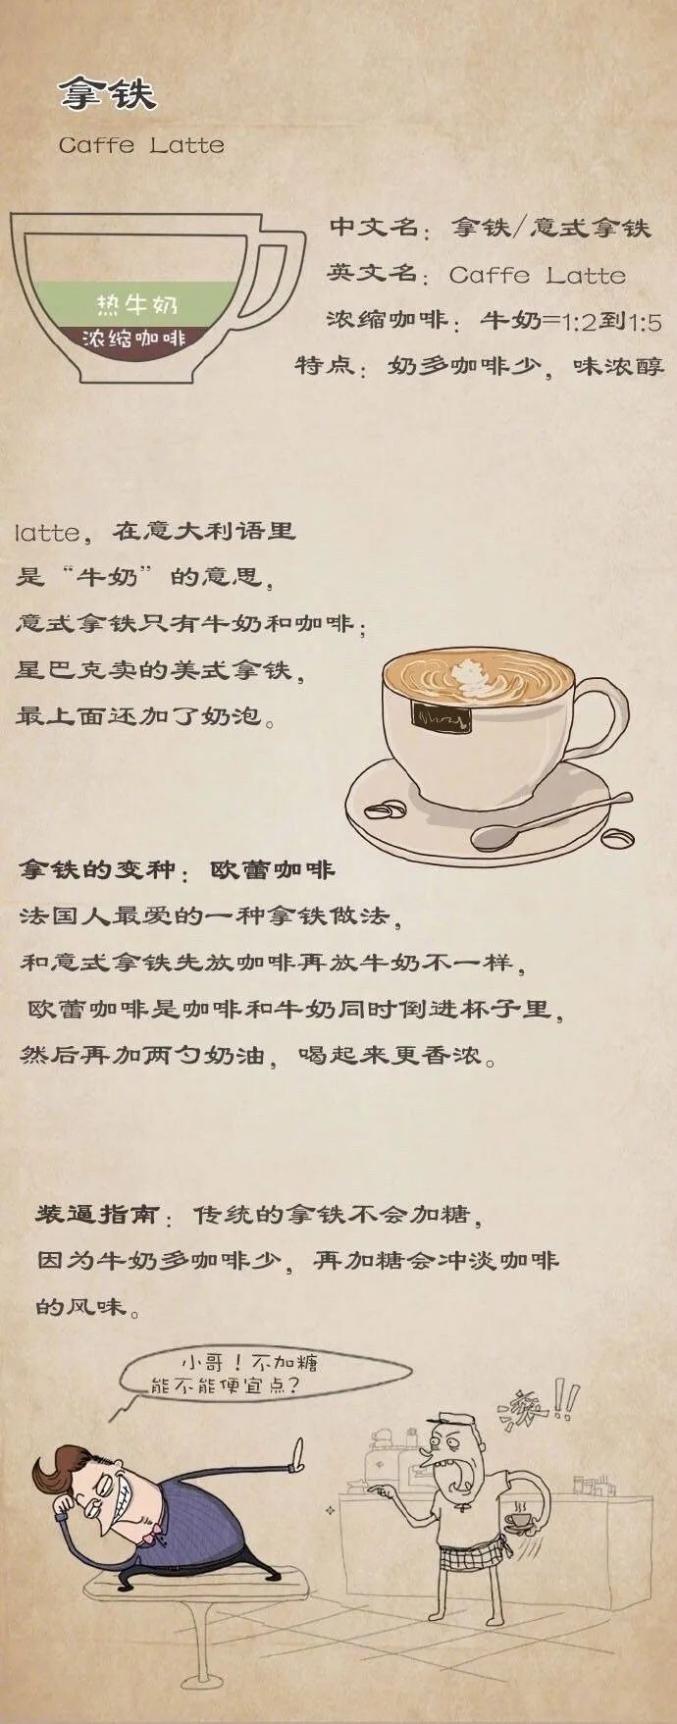 上海咖啡门店_上海哪里的咖啡馆好多家_上海多少家咖啡馆